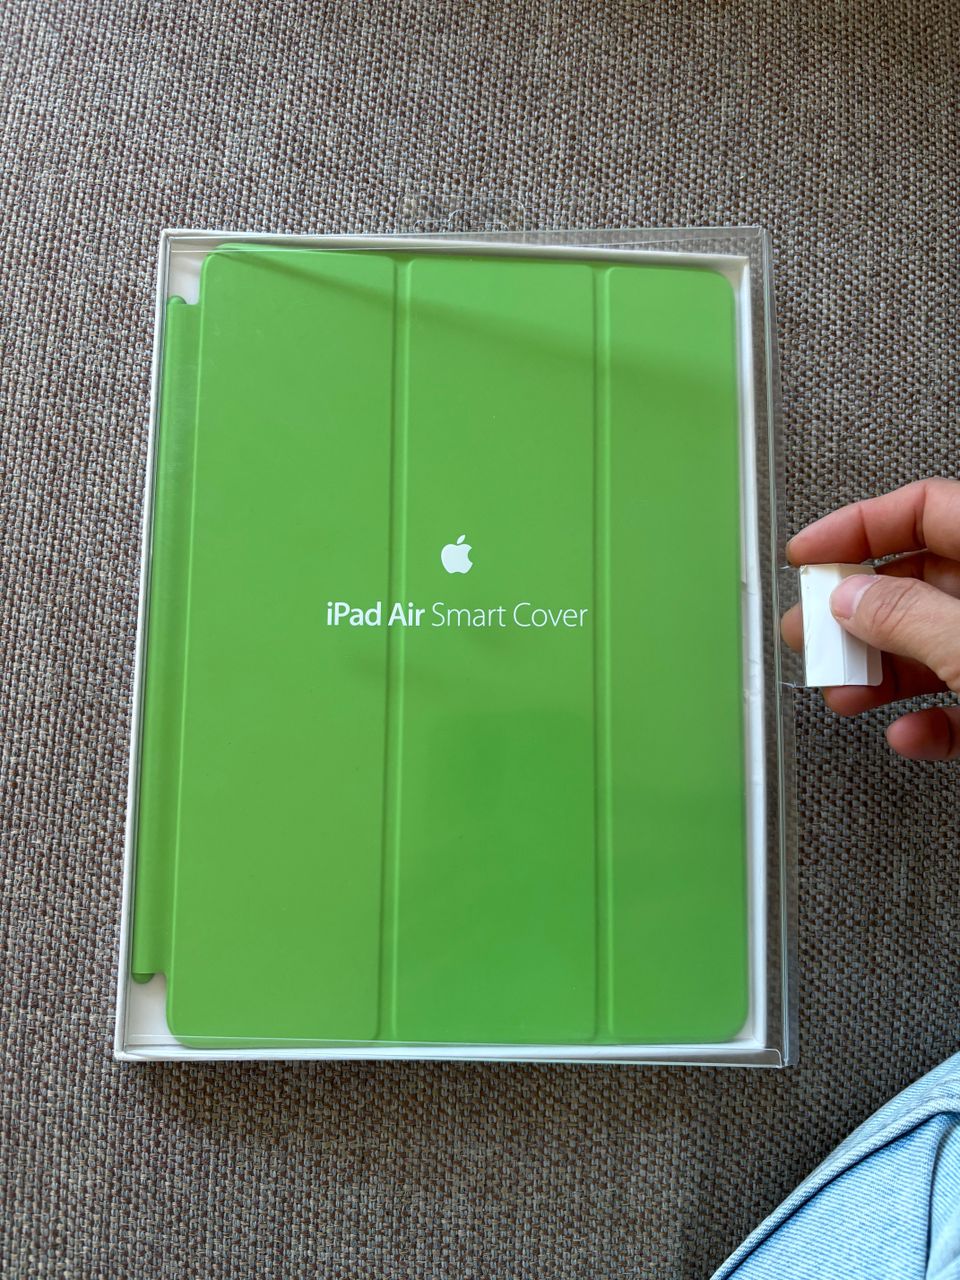 iPad Air cover case